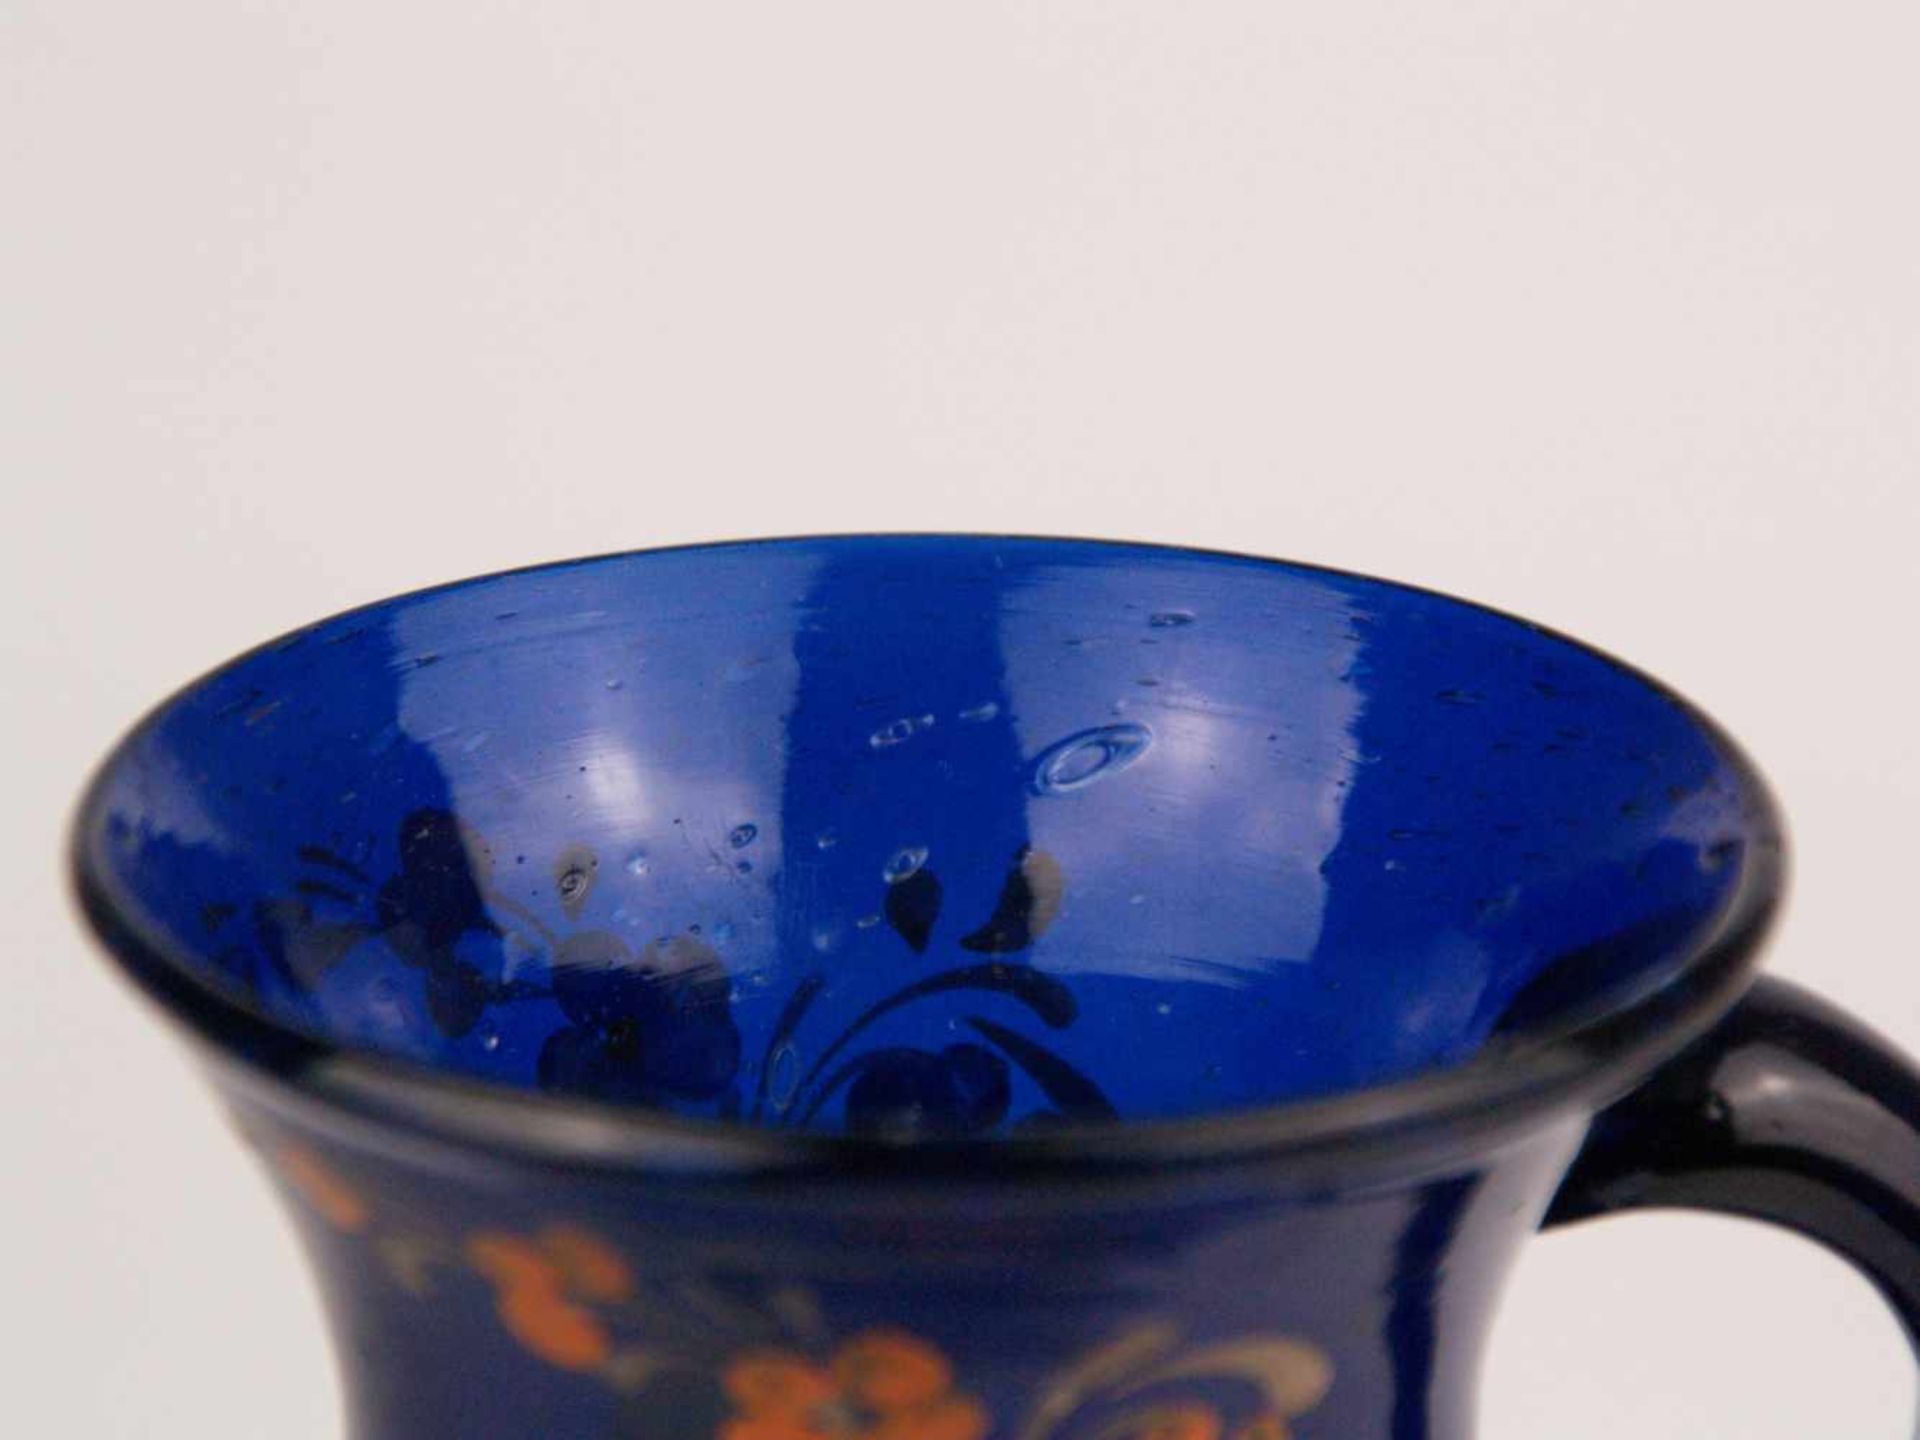 Zwei Becher - 1x Klarglas, teilweise lila getönt, zylindrischer gerillter Korpus, Email- - Bild 6 aus 10